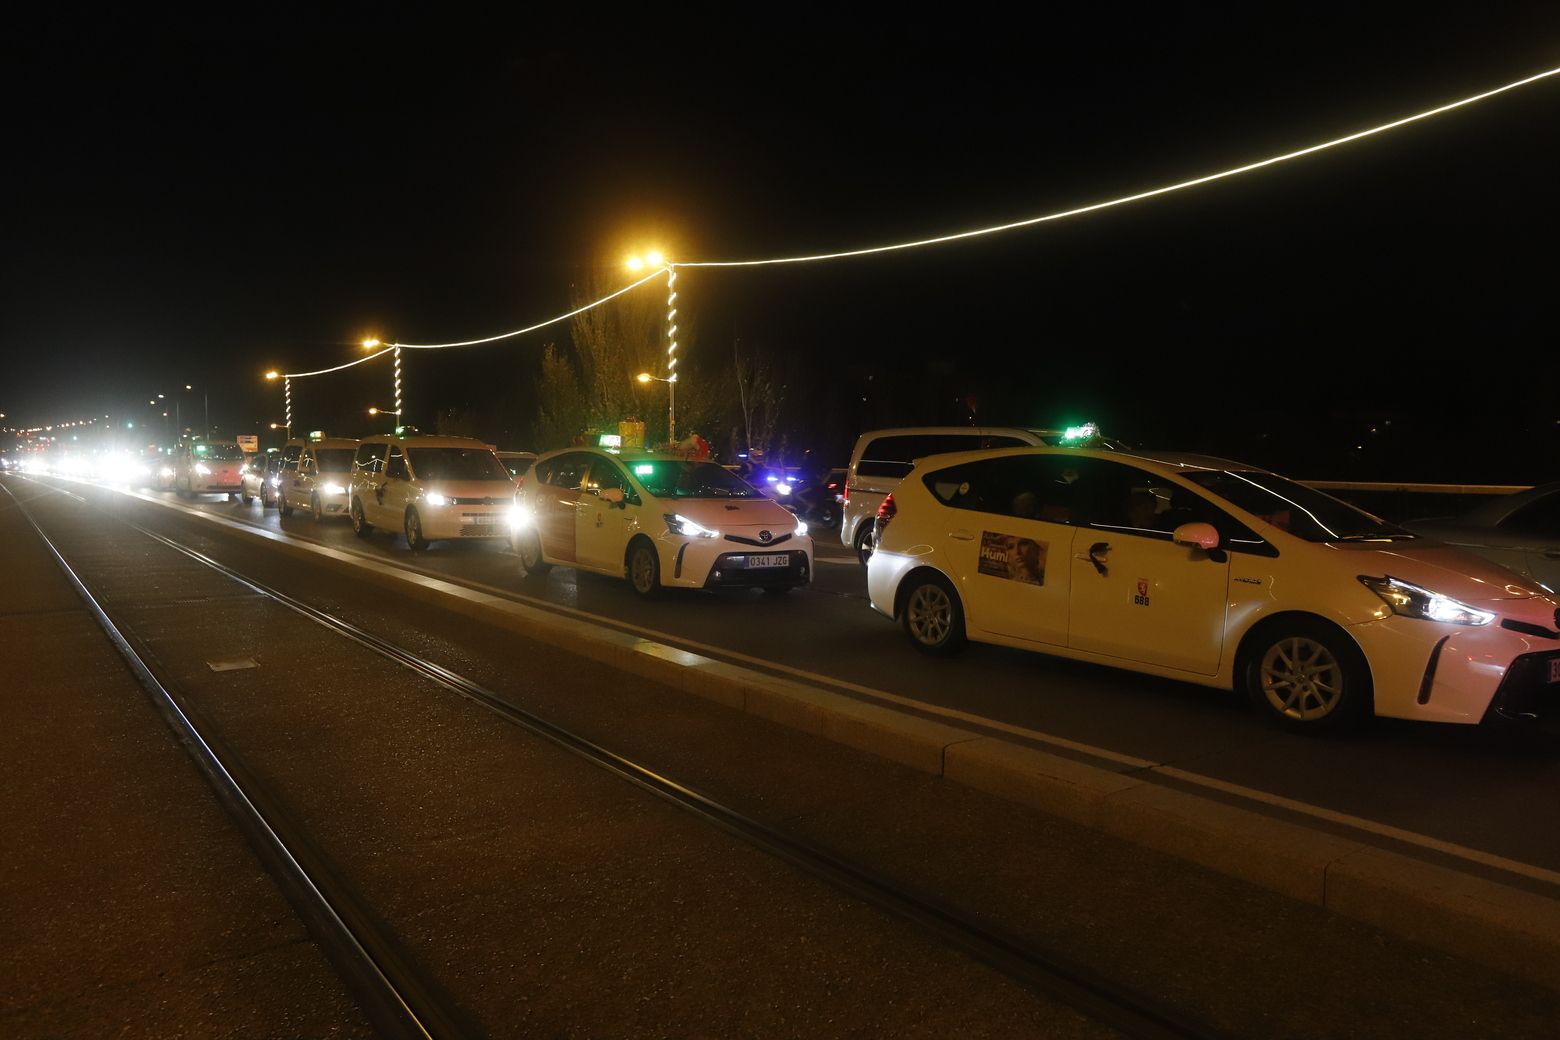 Caravana de taxis en Zaragoza para acercar la Navidad a los más mayores